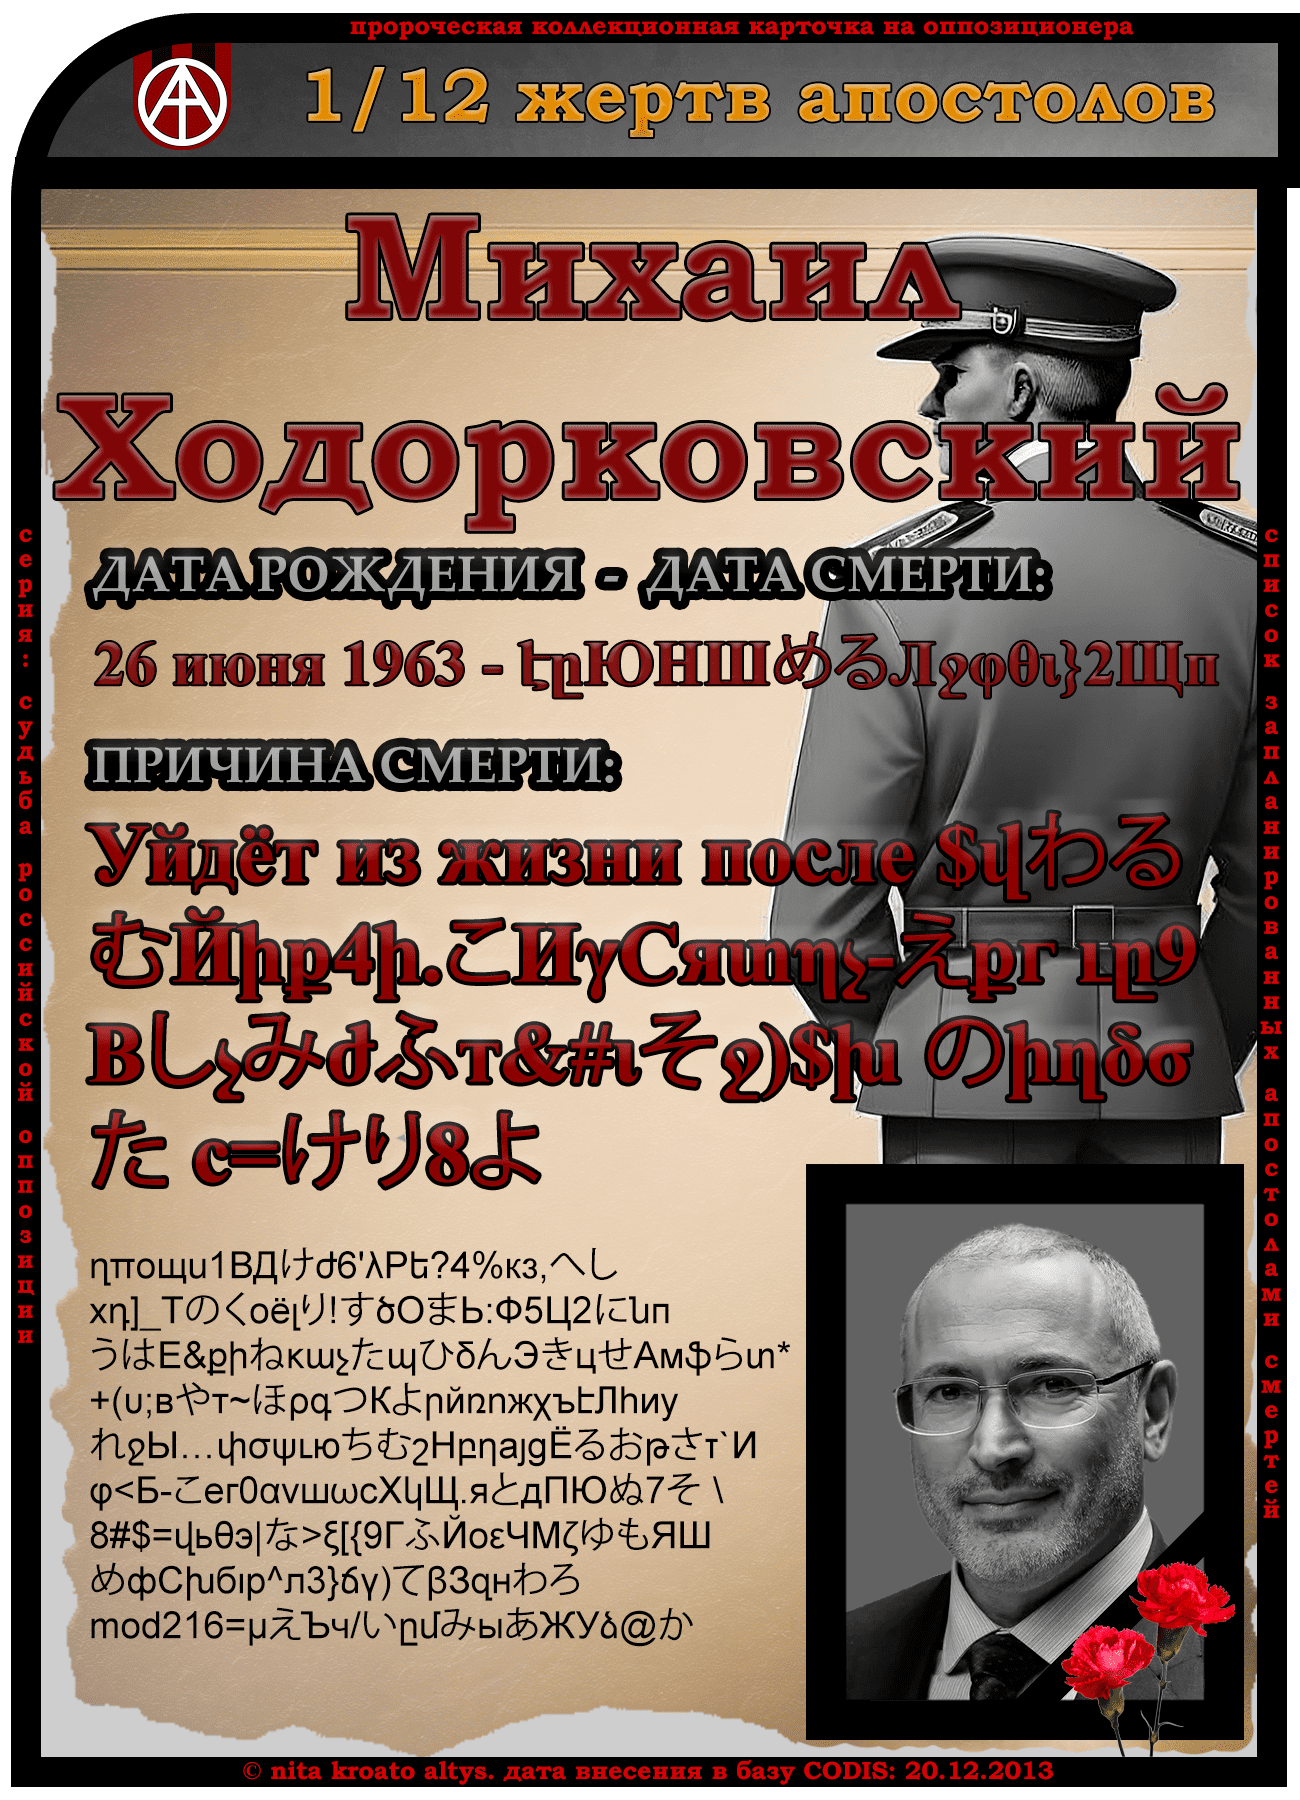 1. Михаил Ходорковский 26 июня 1963. Дата смерти и причина